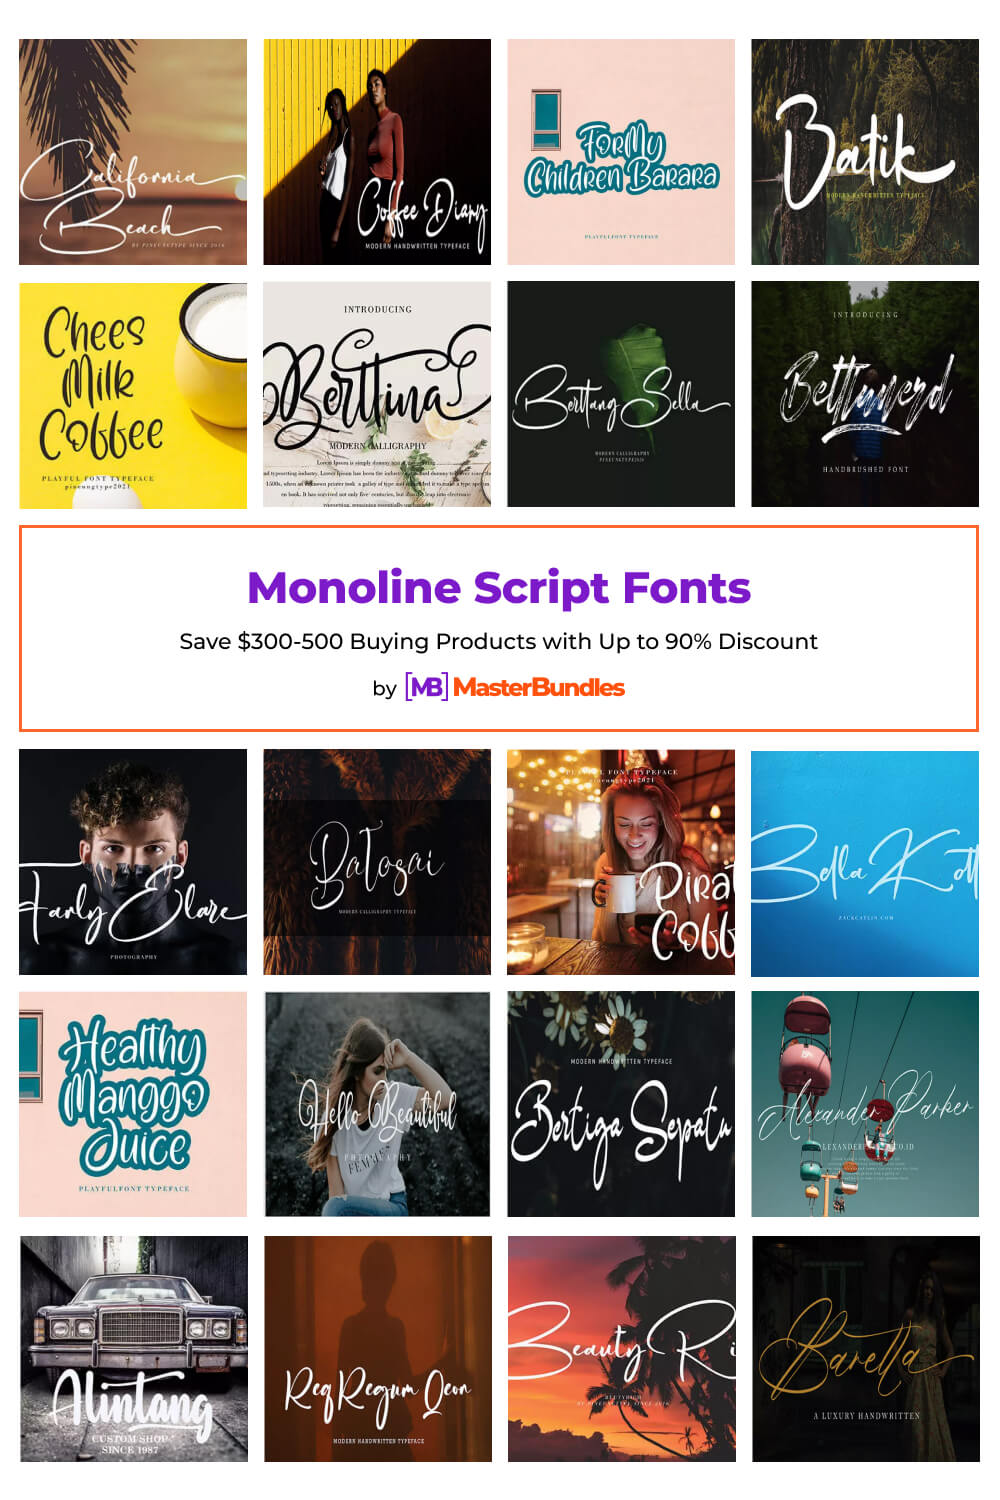 monoline script fonts pinterest image.